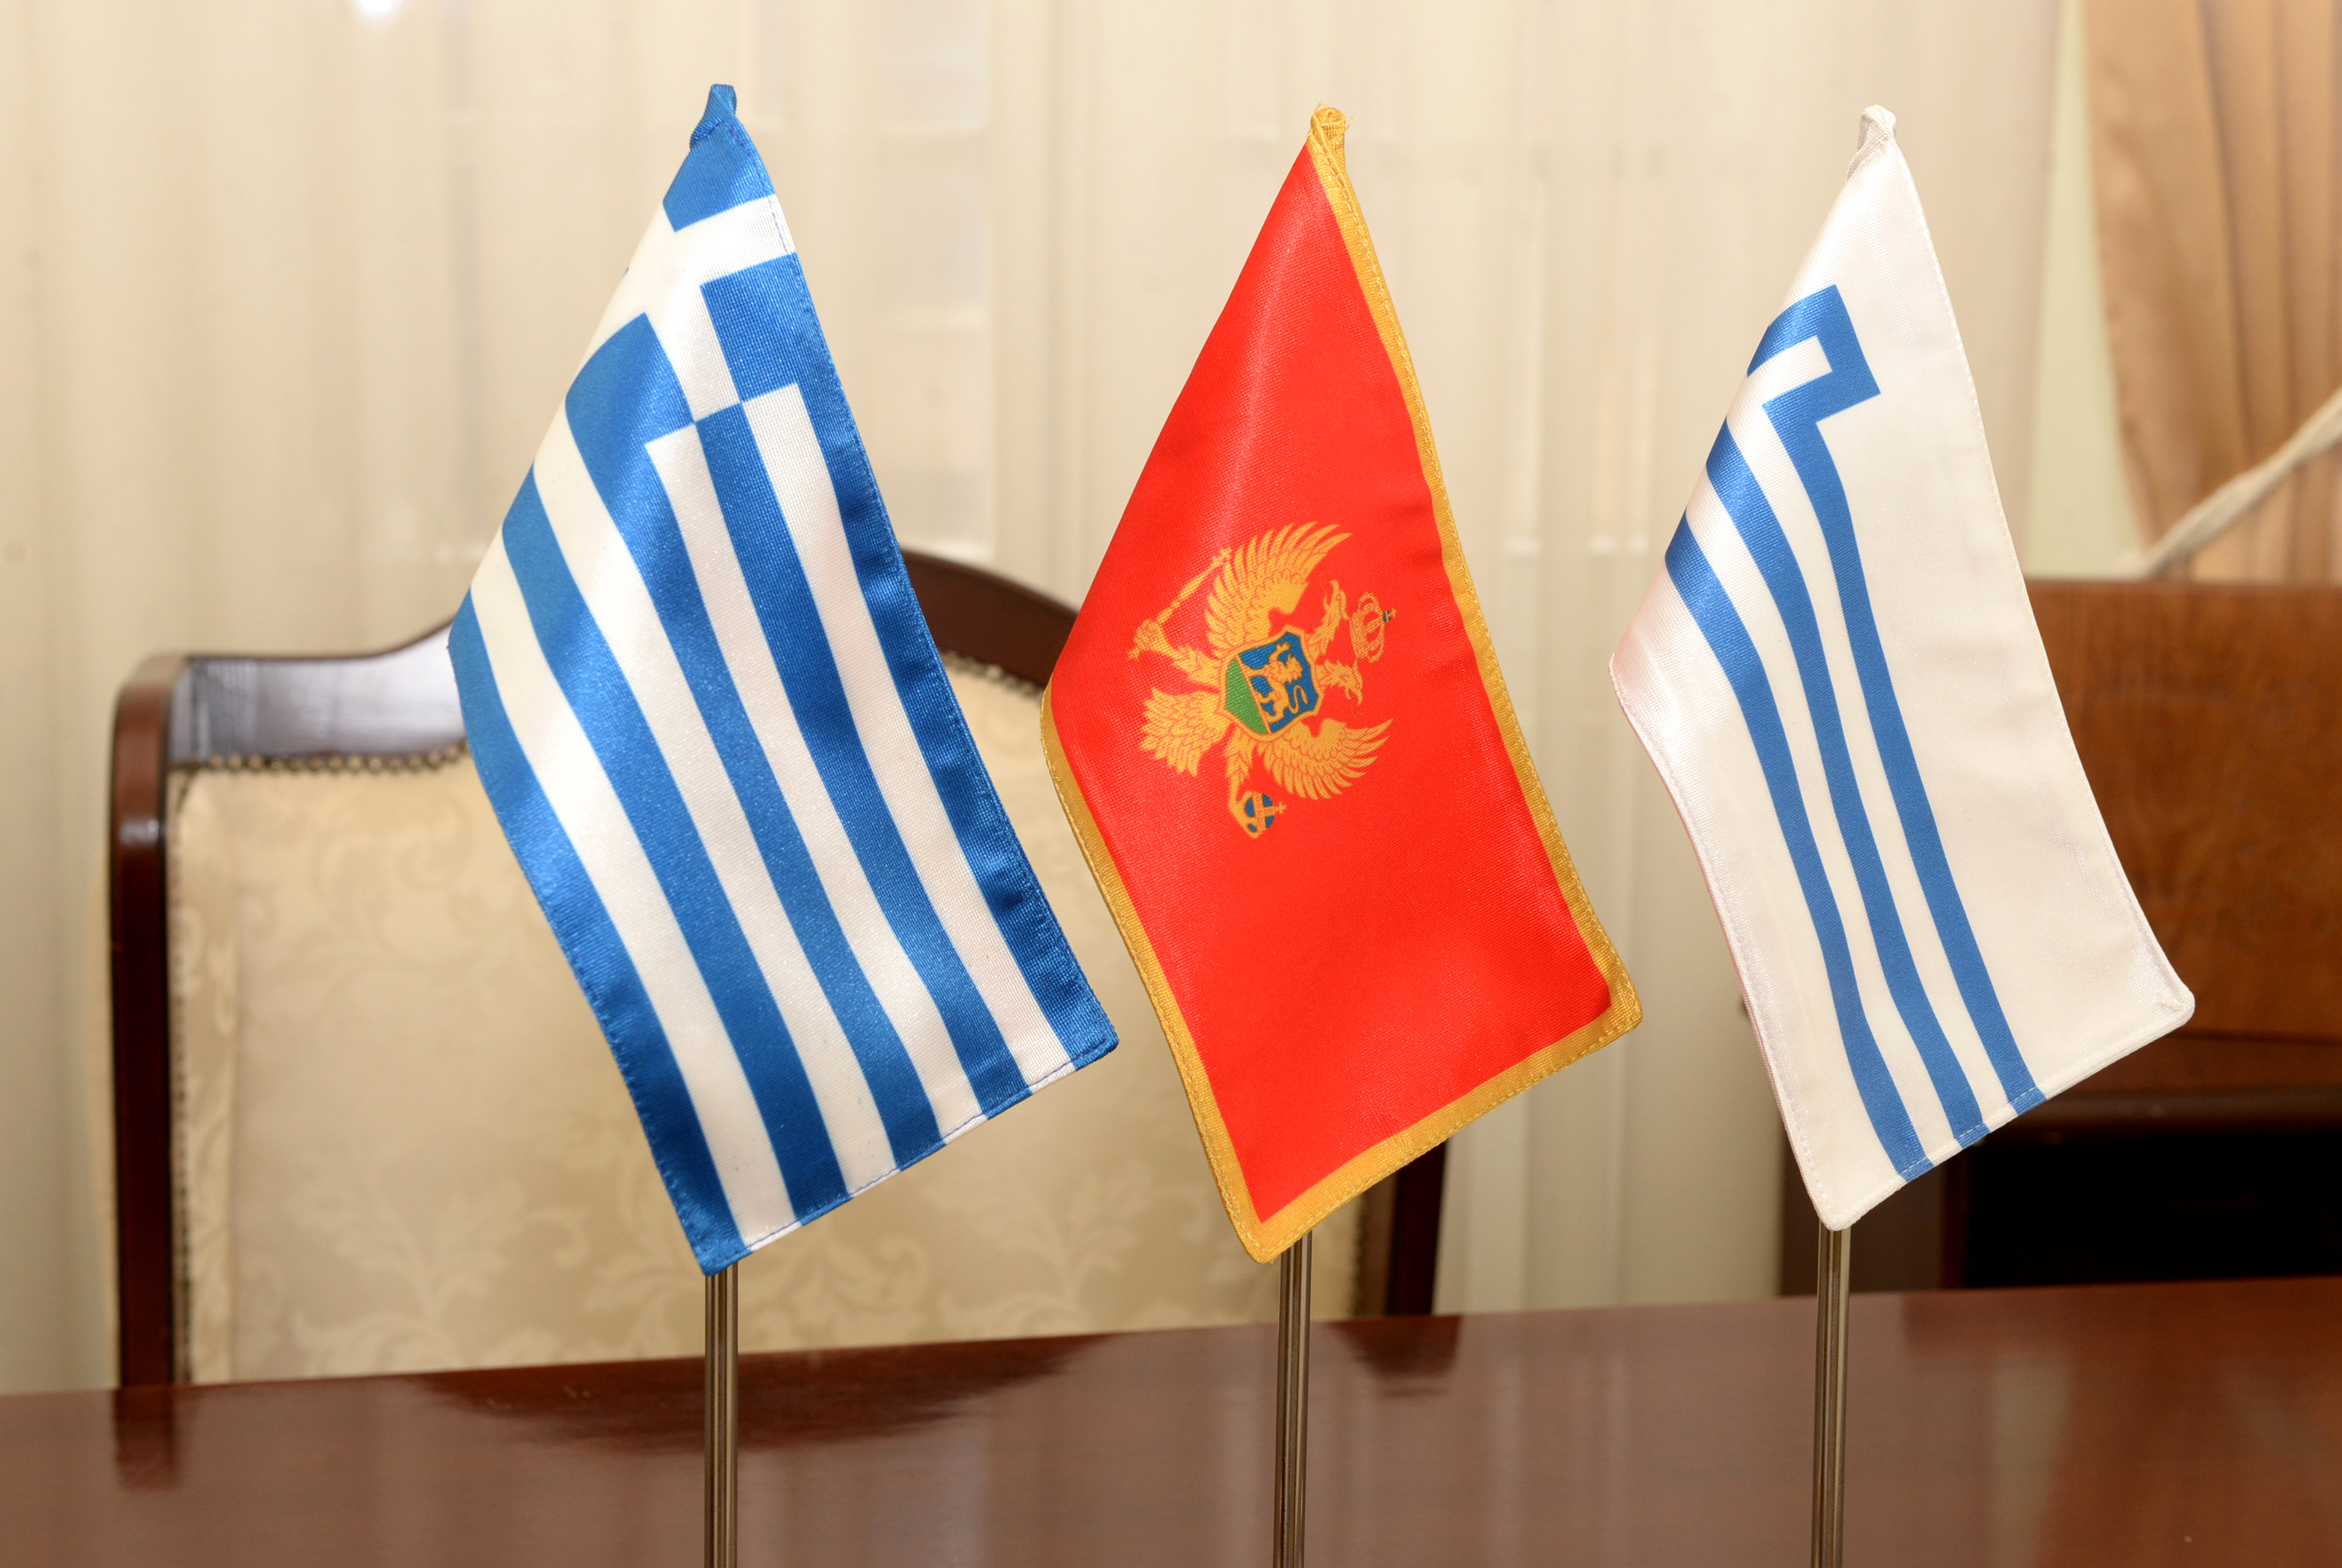 Glavni grad će raditi na jačanju saradnje između Podgorice i grčkih gradova